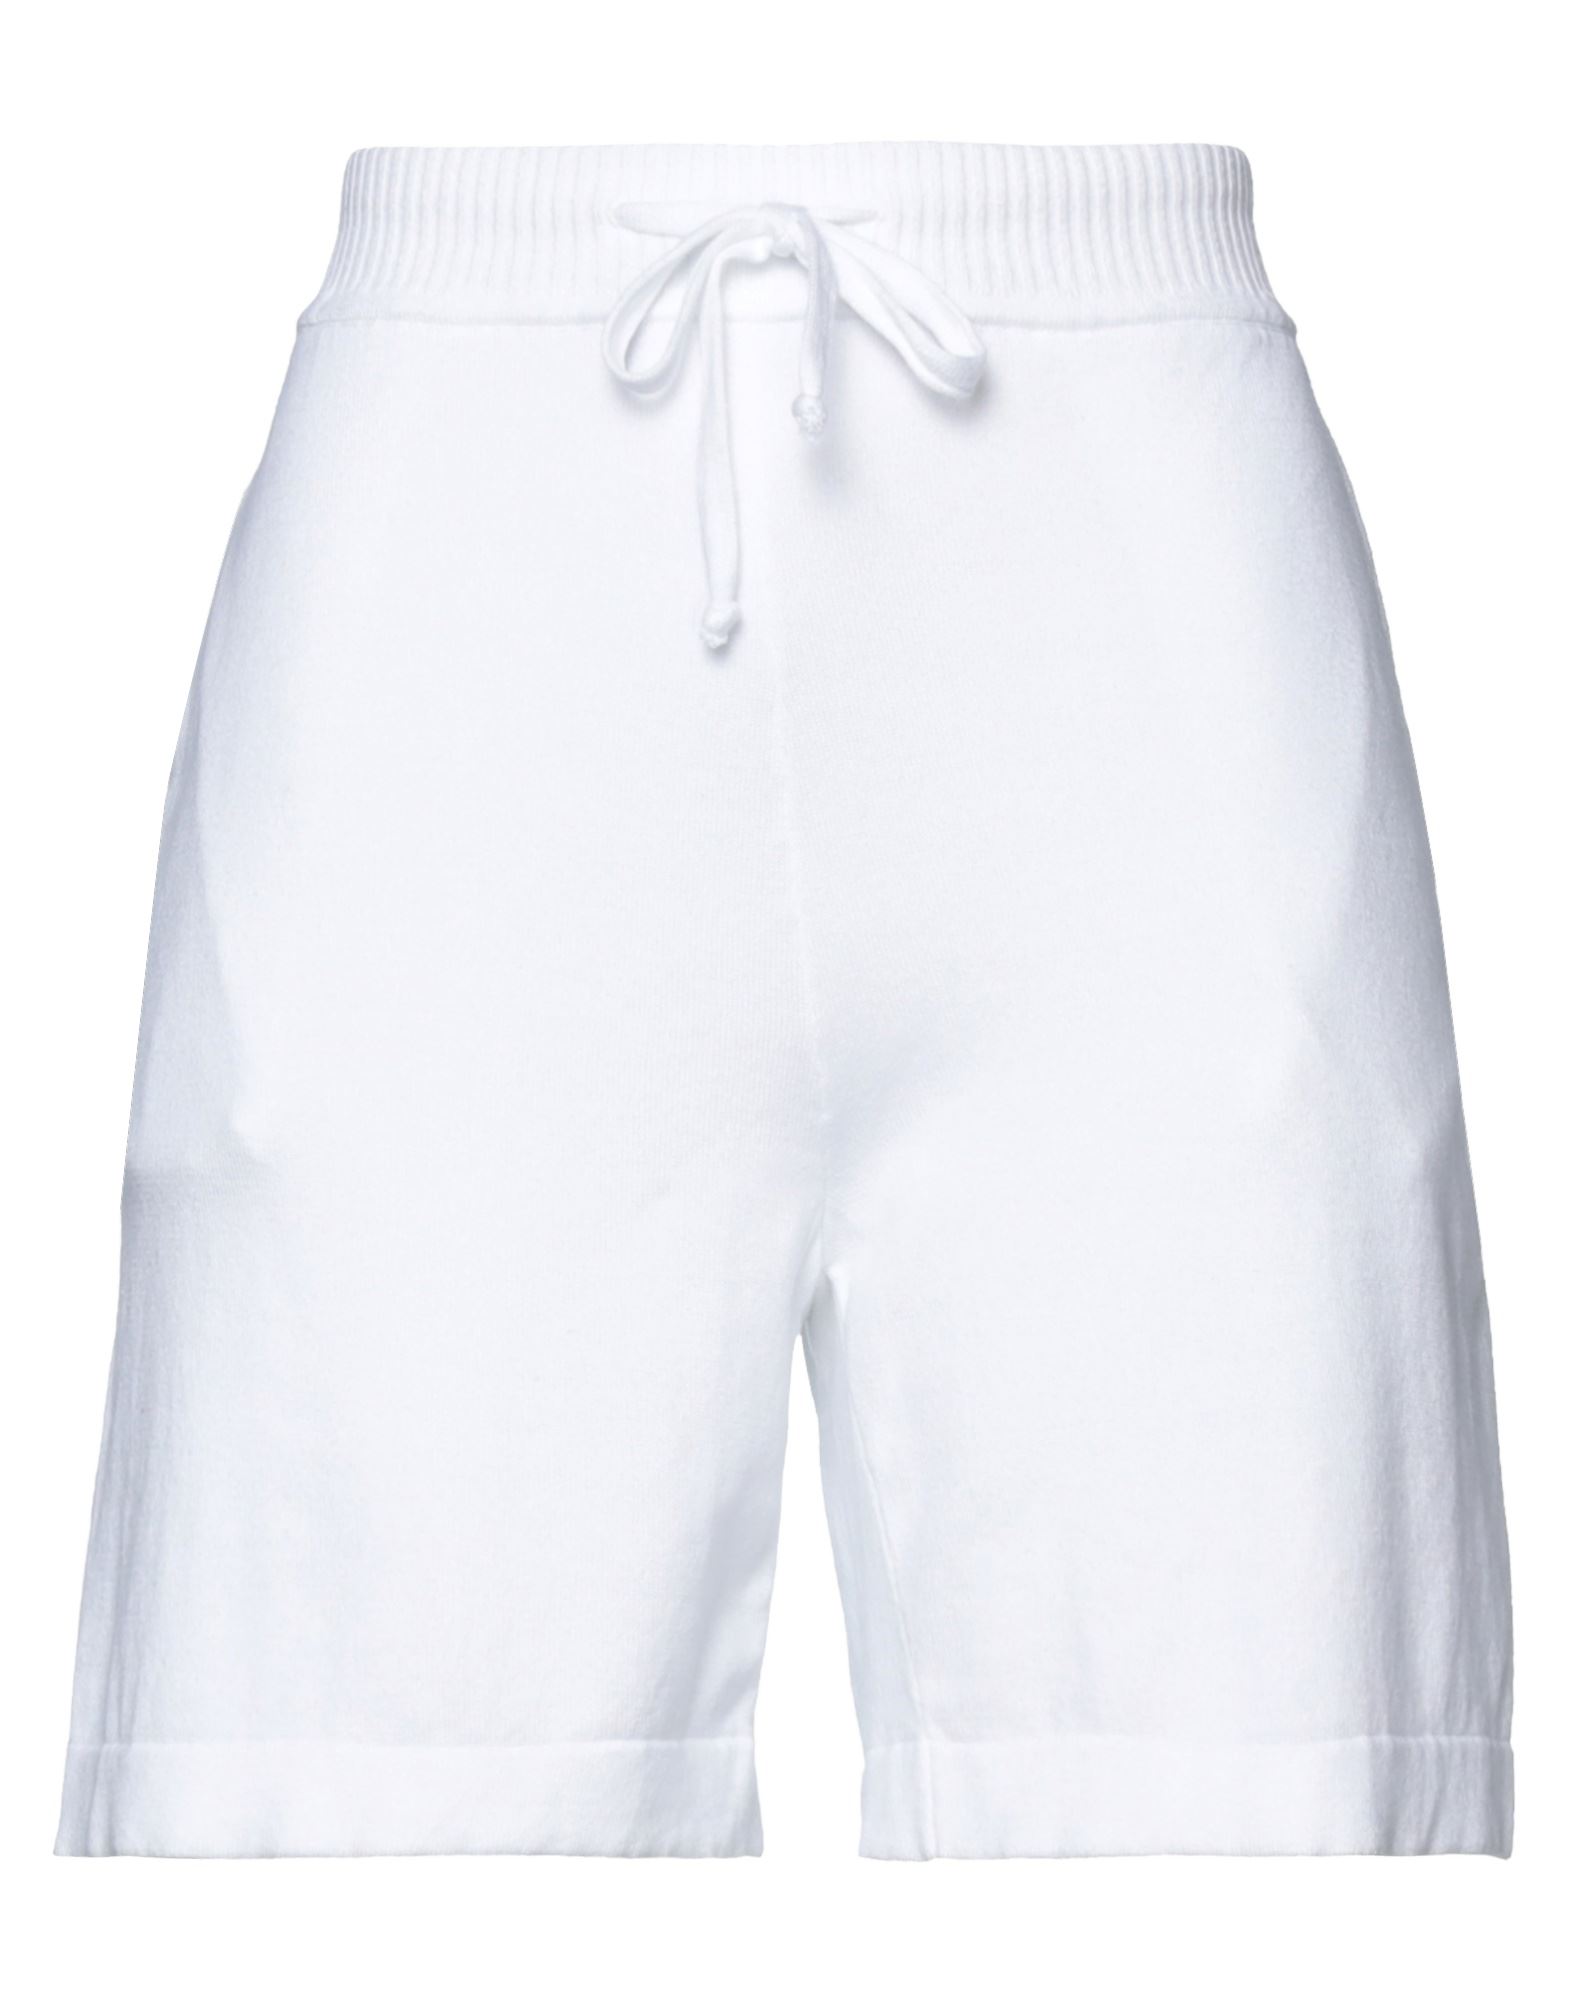 P.a.r.o.s.h P. A.r. O.s. H. Woman Shorts & Bermuda Shorts White Size S Cotton